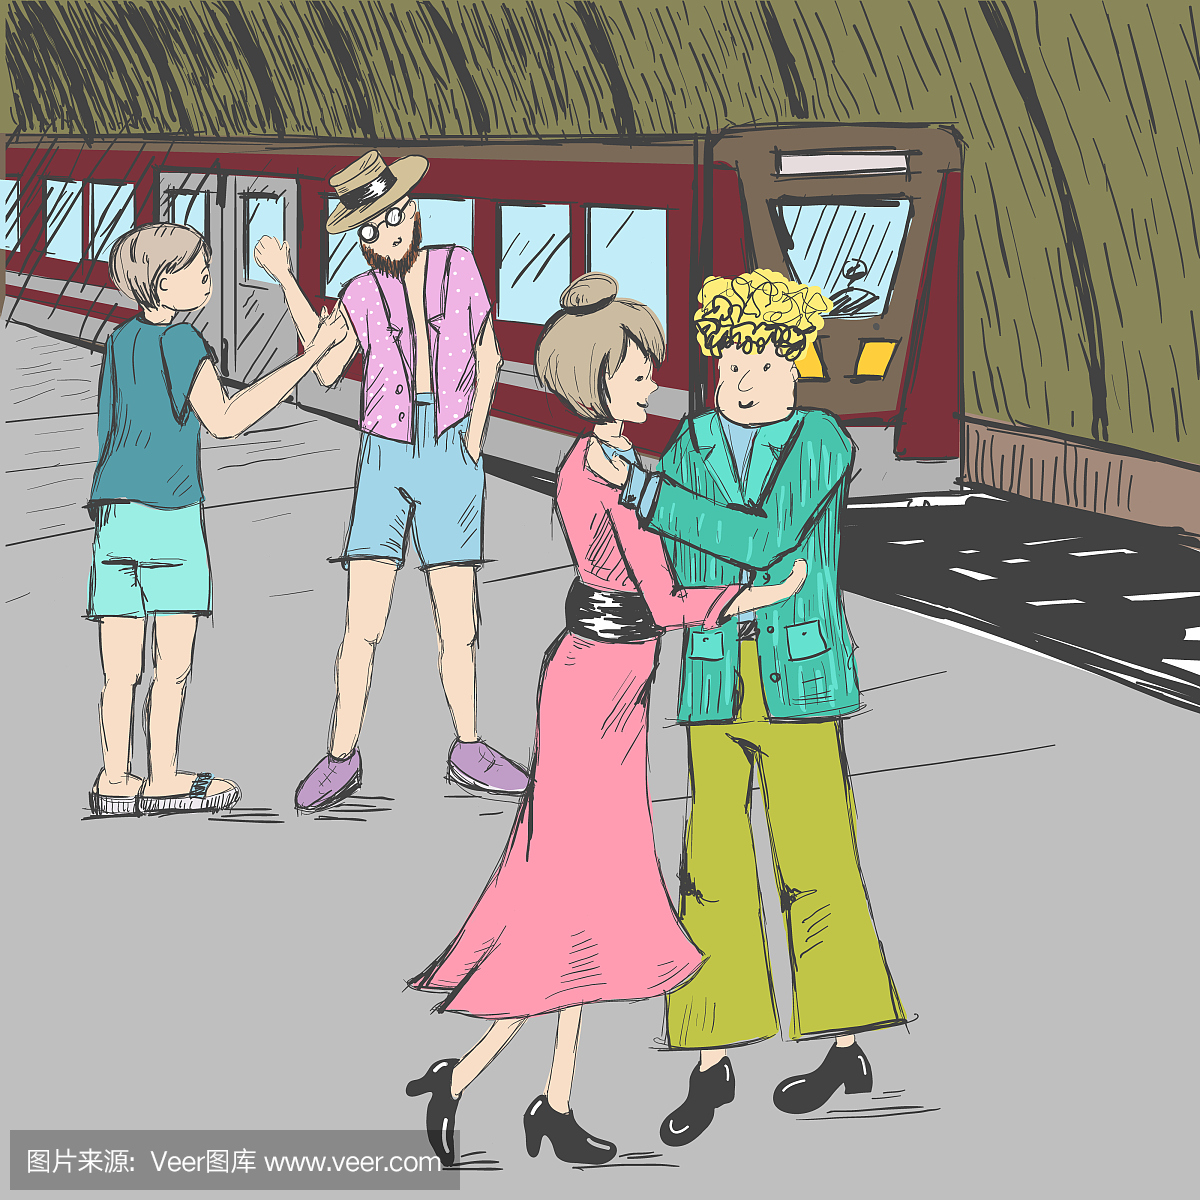 漫画。人们在地铁里说再见。一列火车。一个女